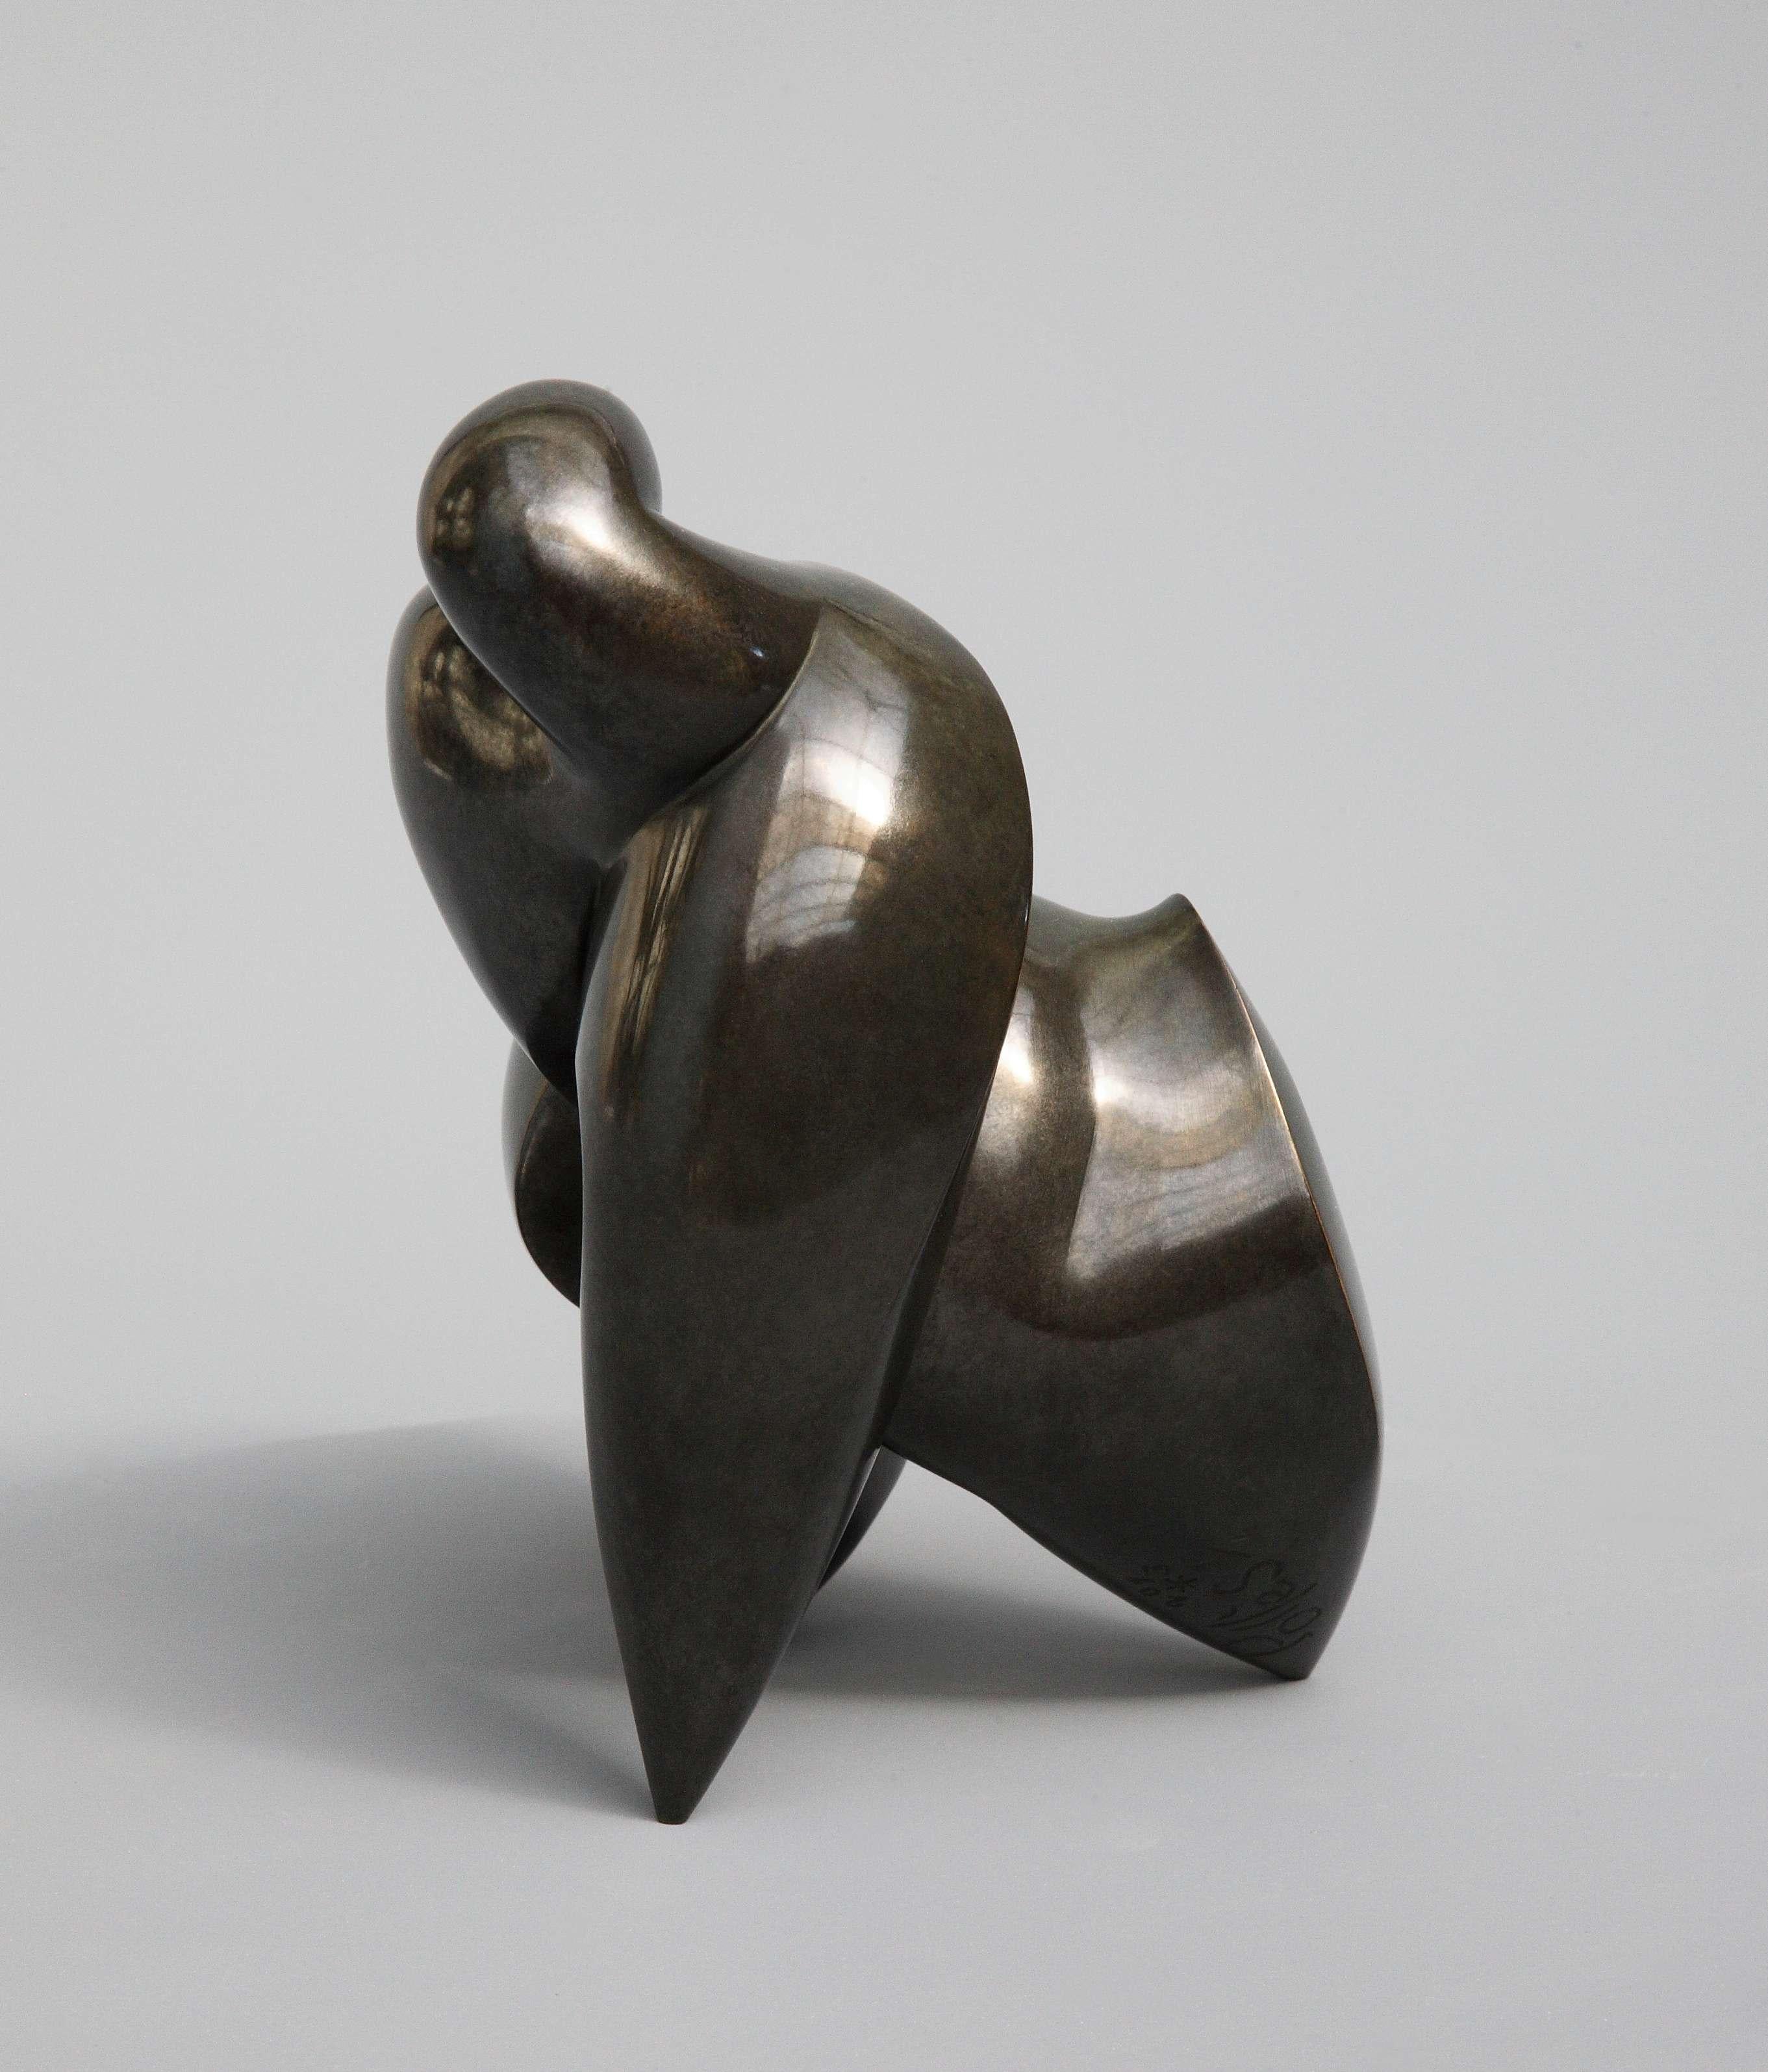 Pollès - Bronze-Skulptur - Athanor
Bronze
1/4
Erstellt im Jahr 2013, gecastet im Jahr 2013
19 x 16 x 14 cm
Signiert und nummeriert

BIOGRAPHIE
Pollès wurde 1945 in Paris geboren
Wie Leonard de Vinci auf der Suche nach anatomischer Perfektion, nach